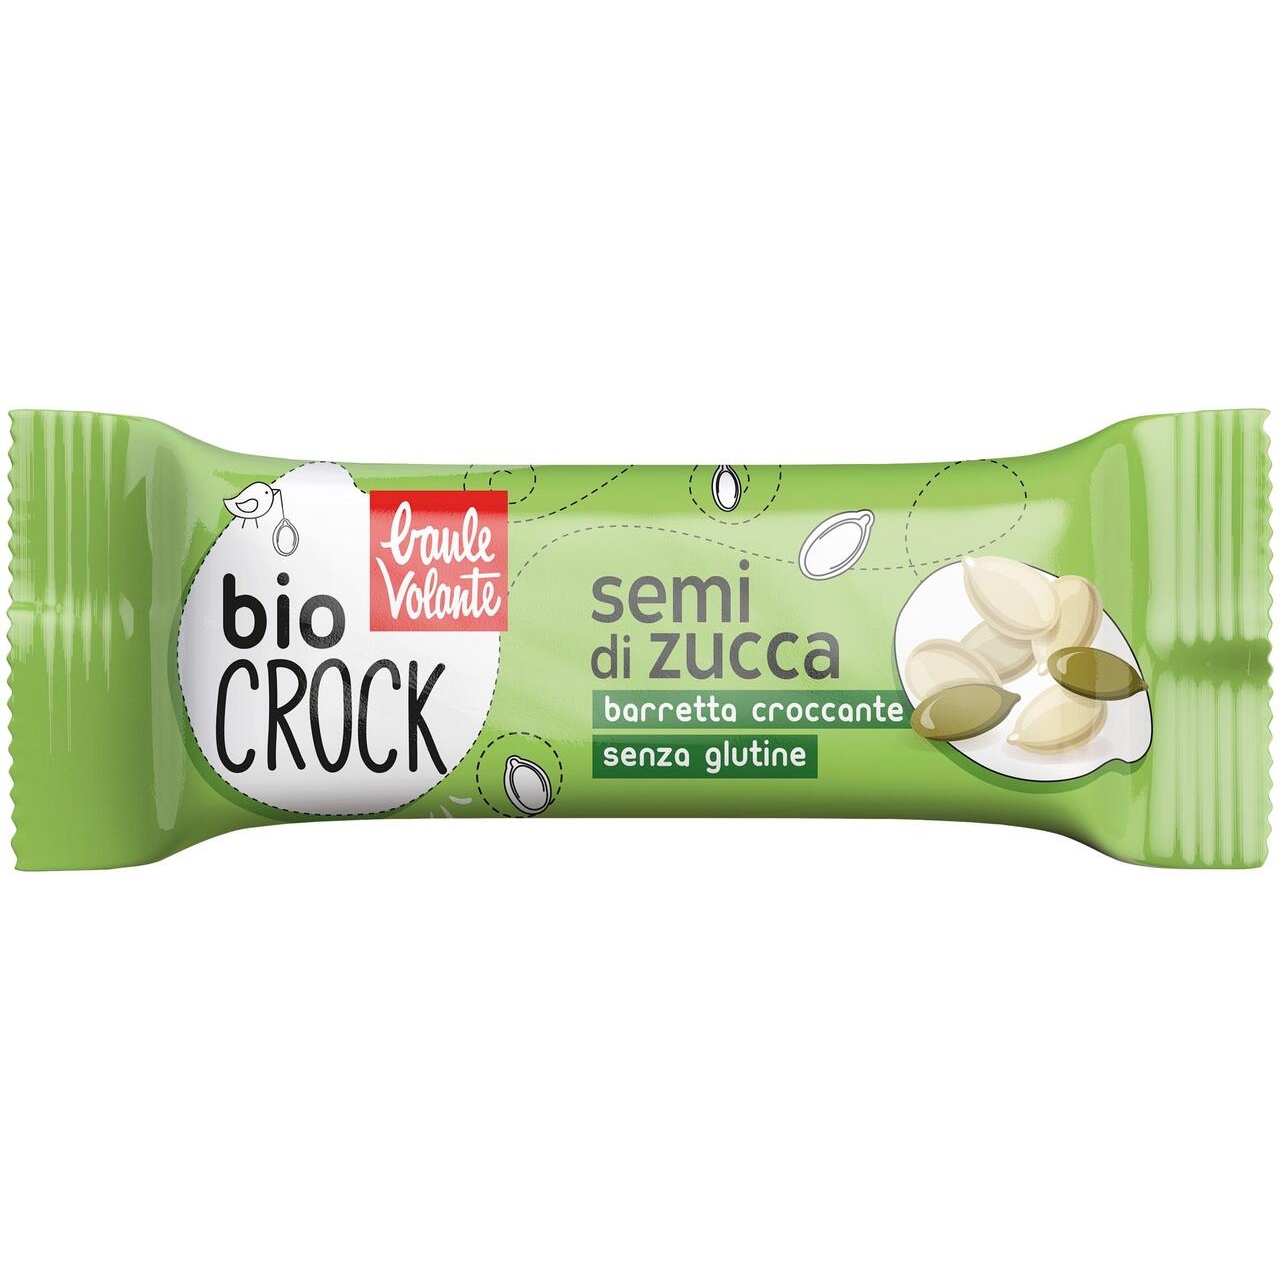 Bio crock – croccante di semi di zucca